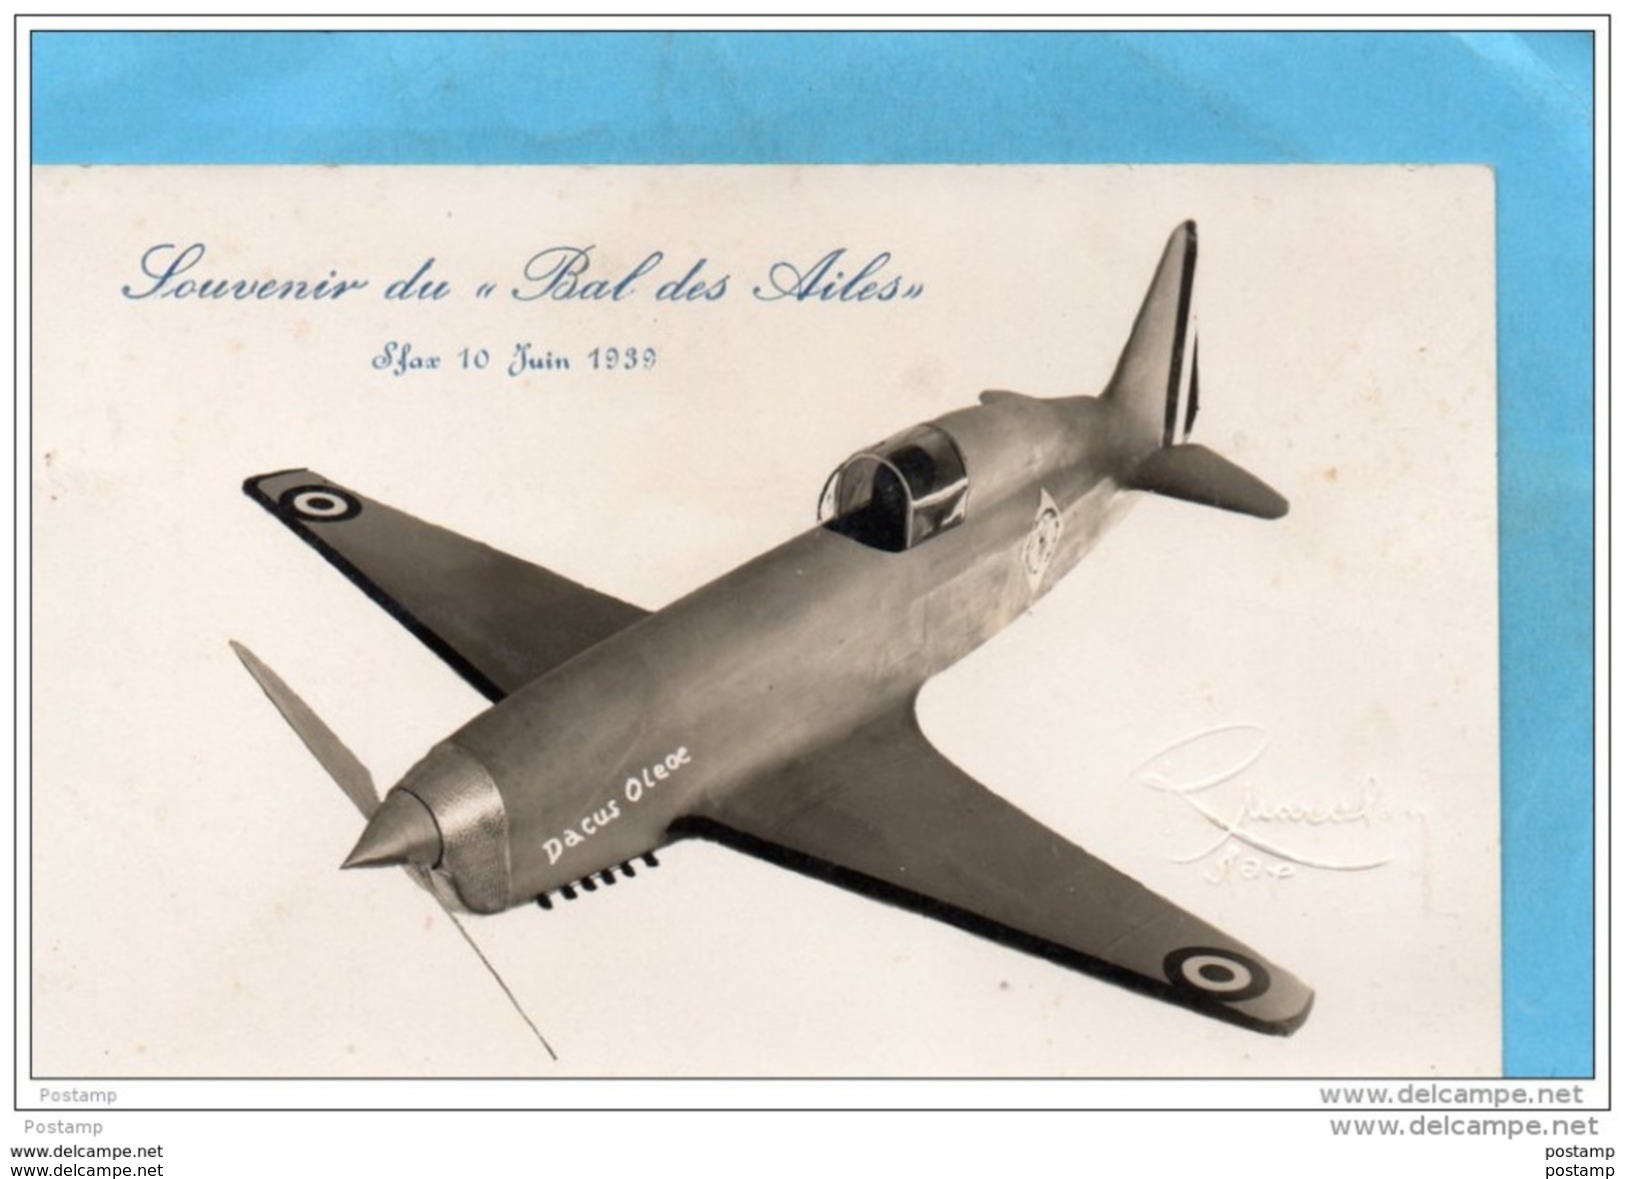 TUNISIE-SFAX -10 JUIN 1939-carte Phot  Souvenir" Du Bal Des Ailes " -AVIATION- RARE-Photographe R Marcilon - 1919-1938: Entre Guerres